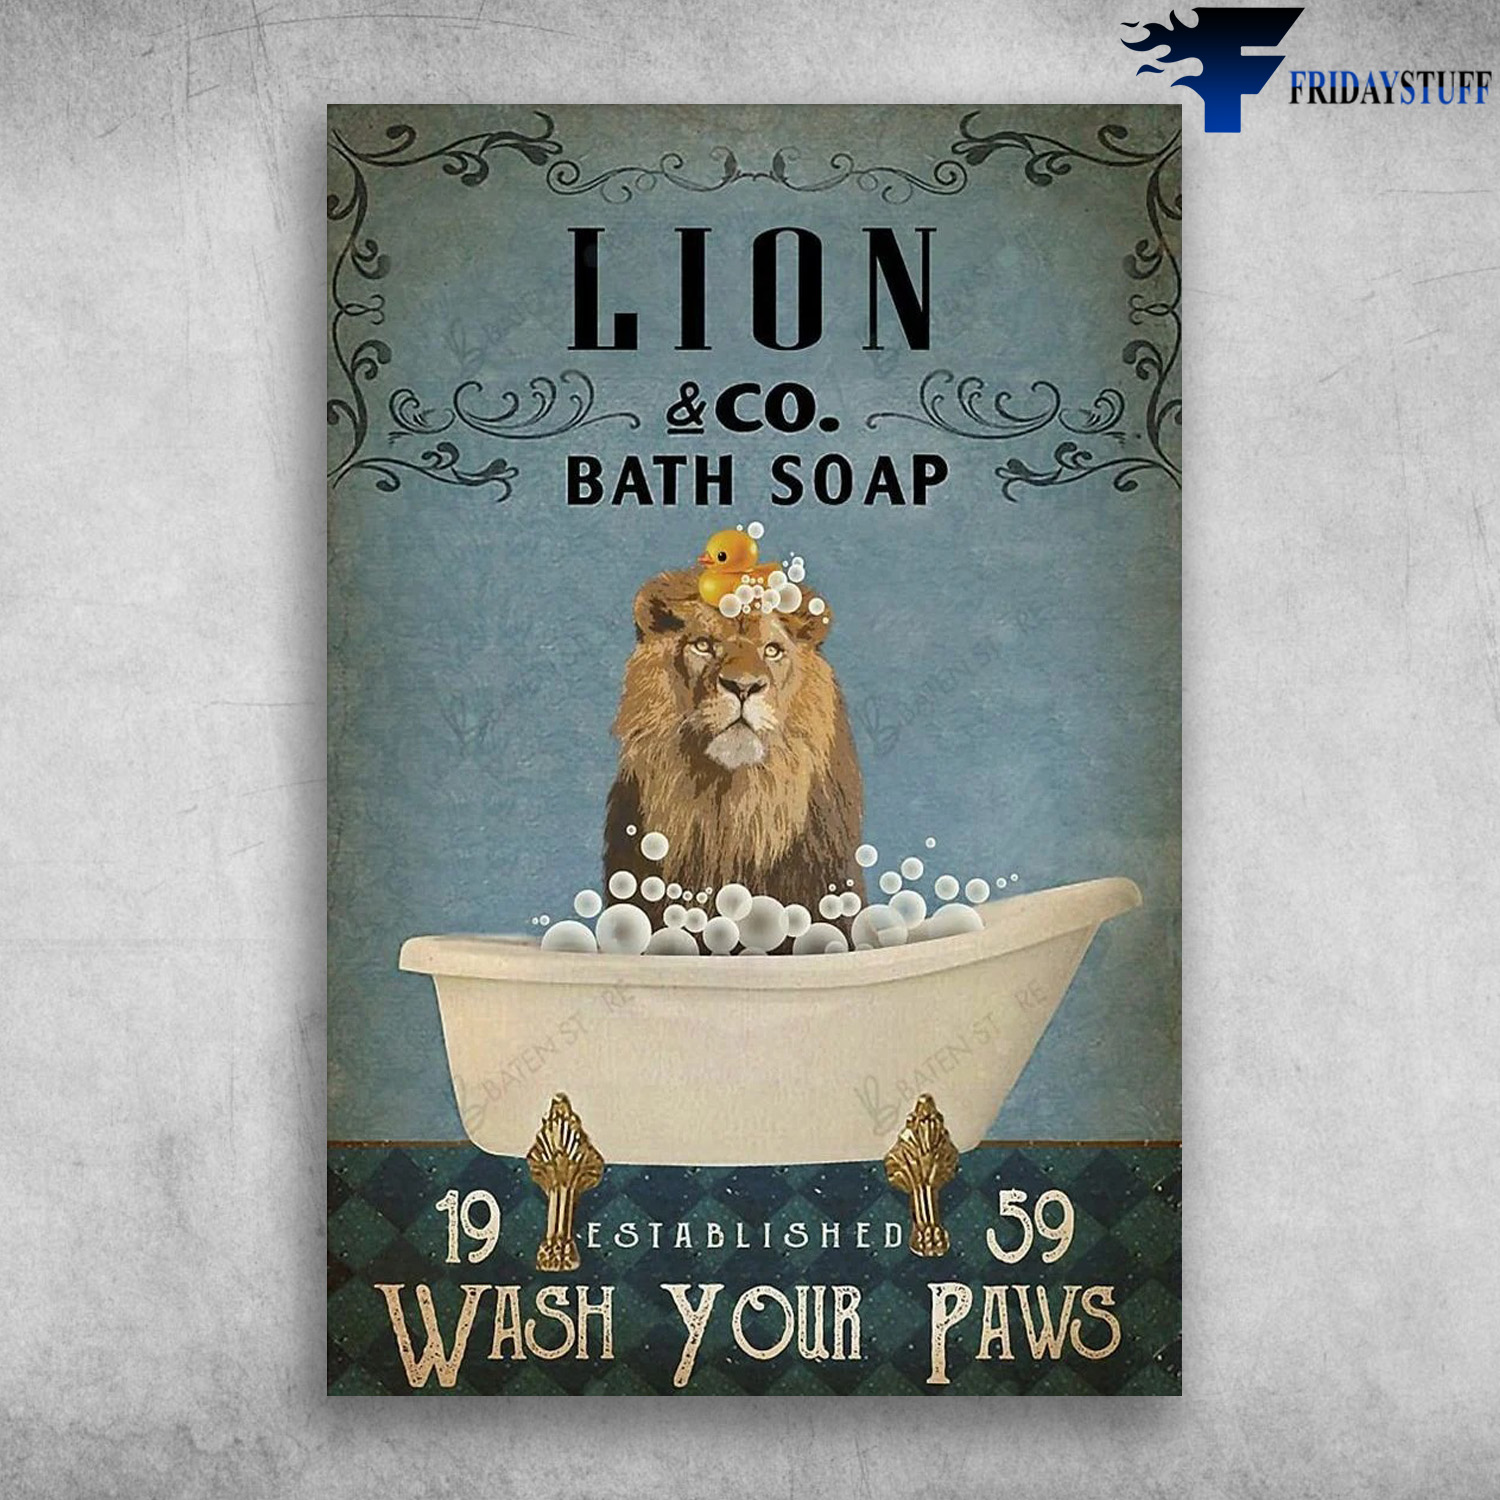 Lion & CO. Bath Soap - Wash Your Paws